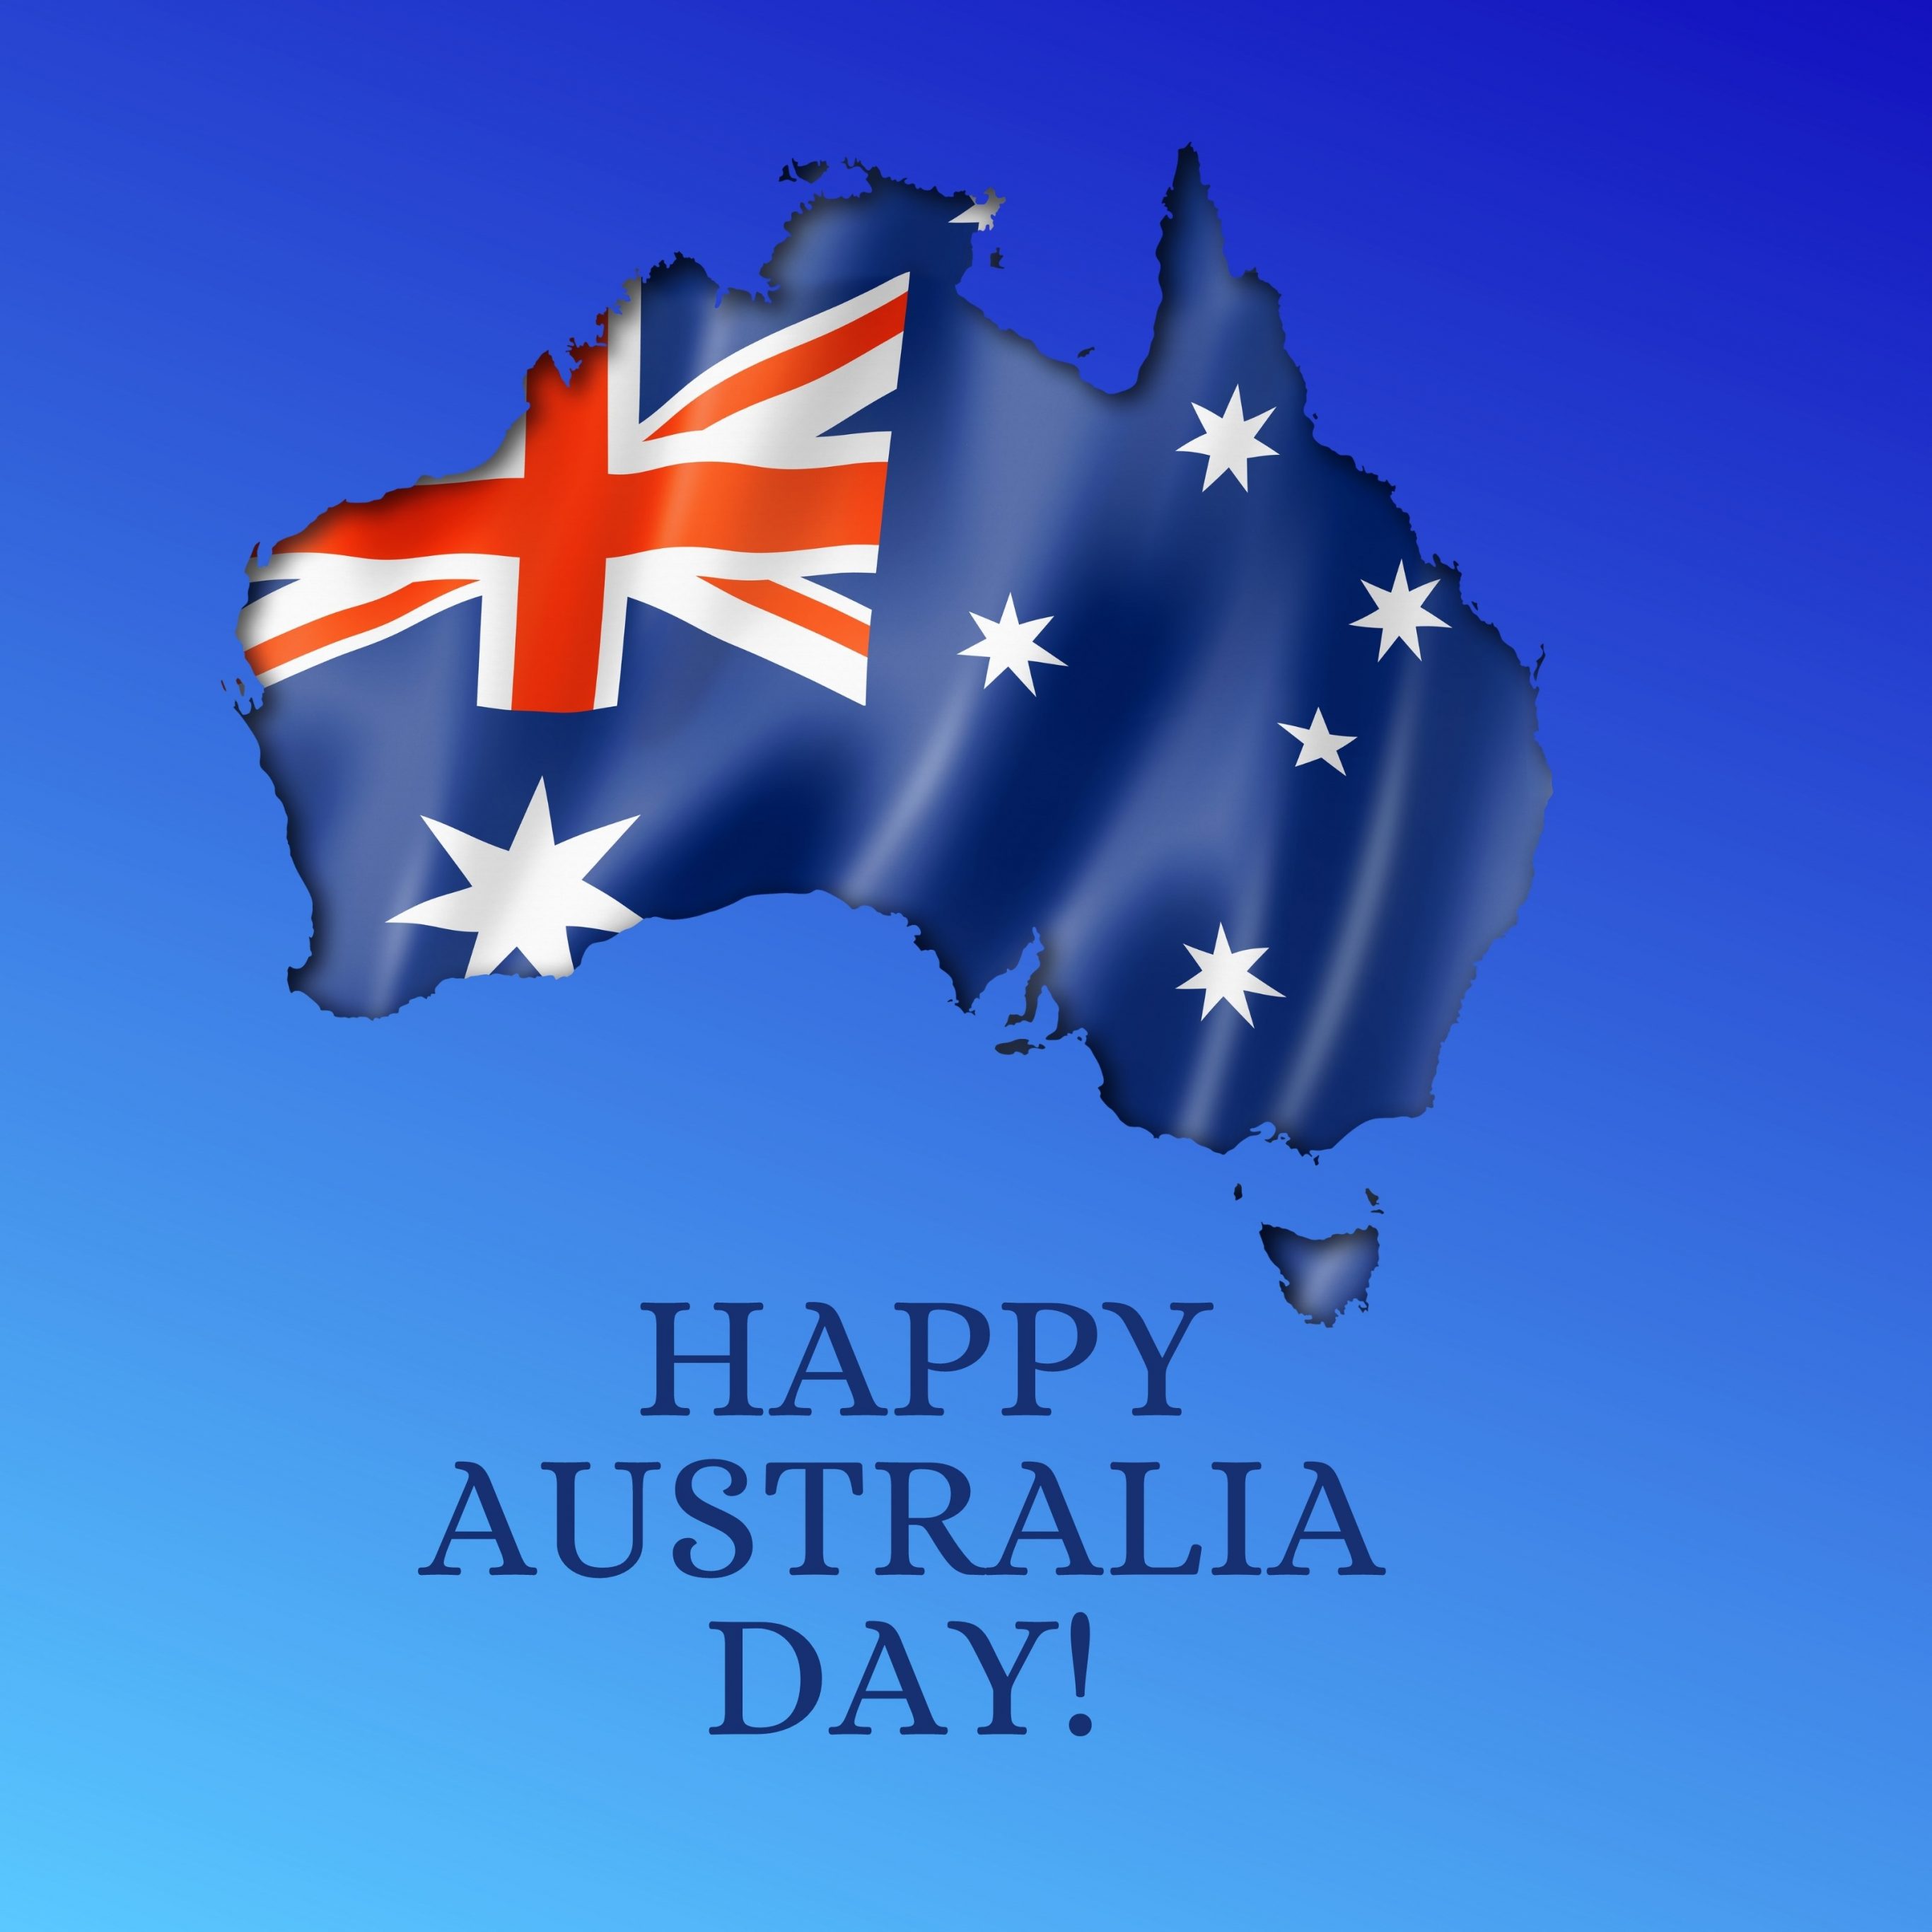 2732x2732 wallpapers 4k iPad Pro Happy Australia Day iPad Wallpaper 2732x2732 pixels resolution